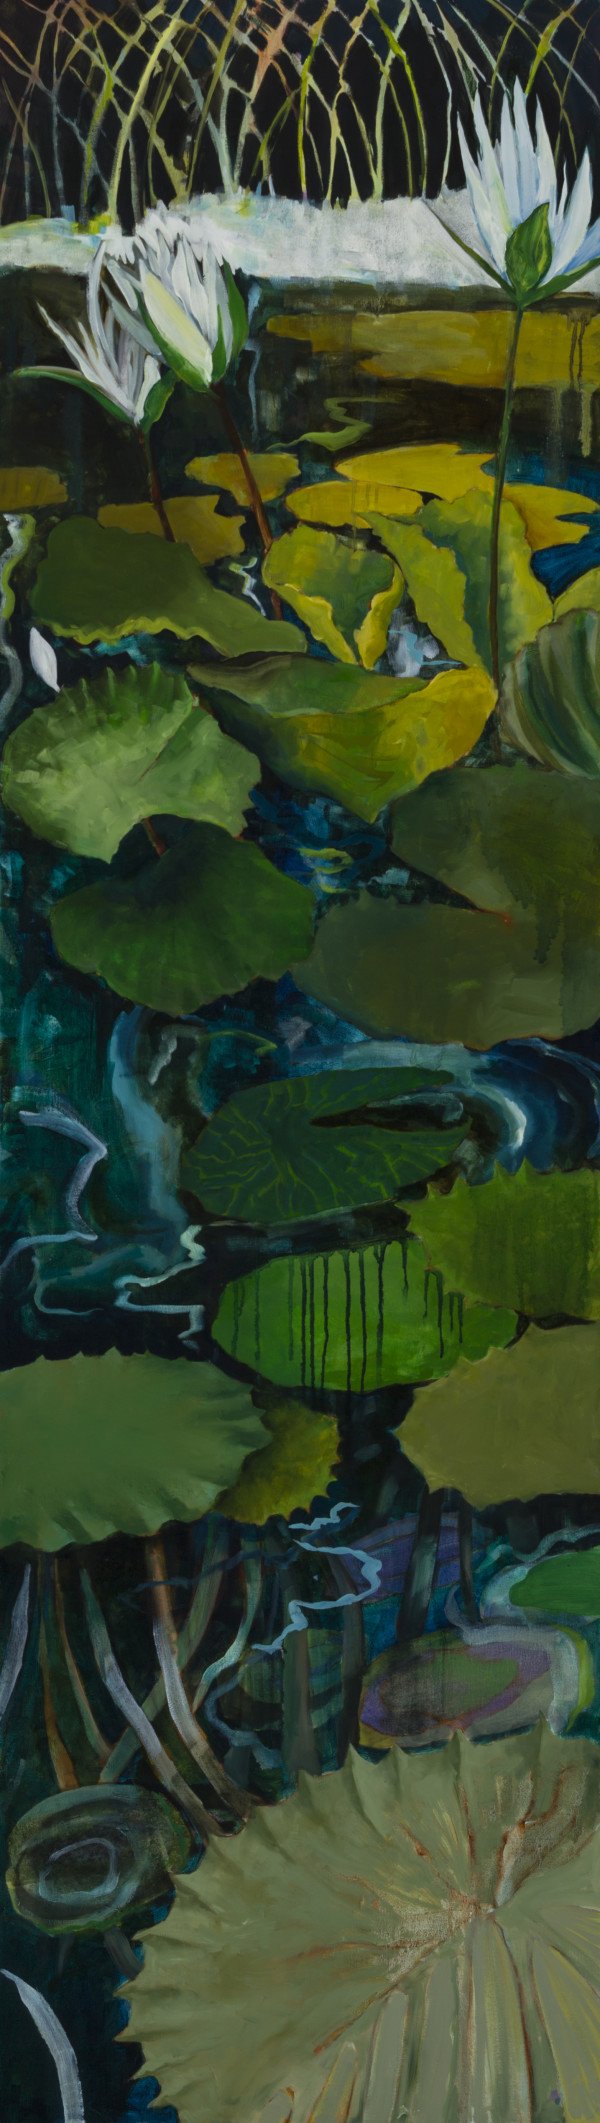 River Bottom by Susan  Schiesser